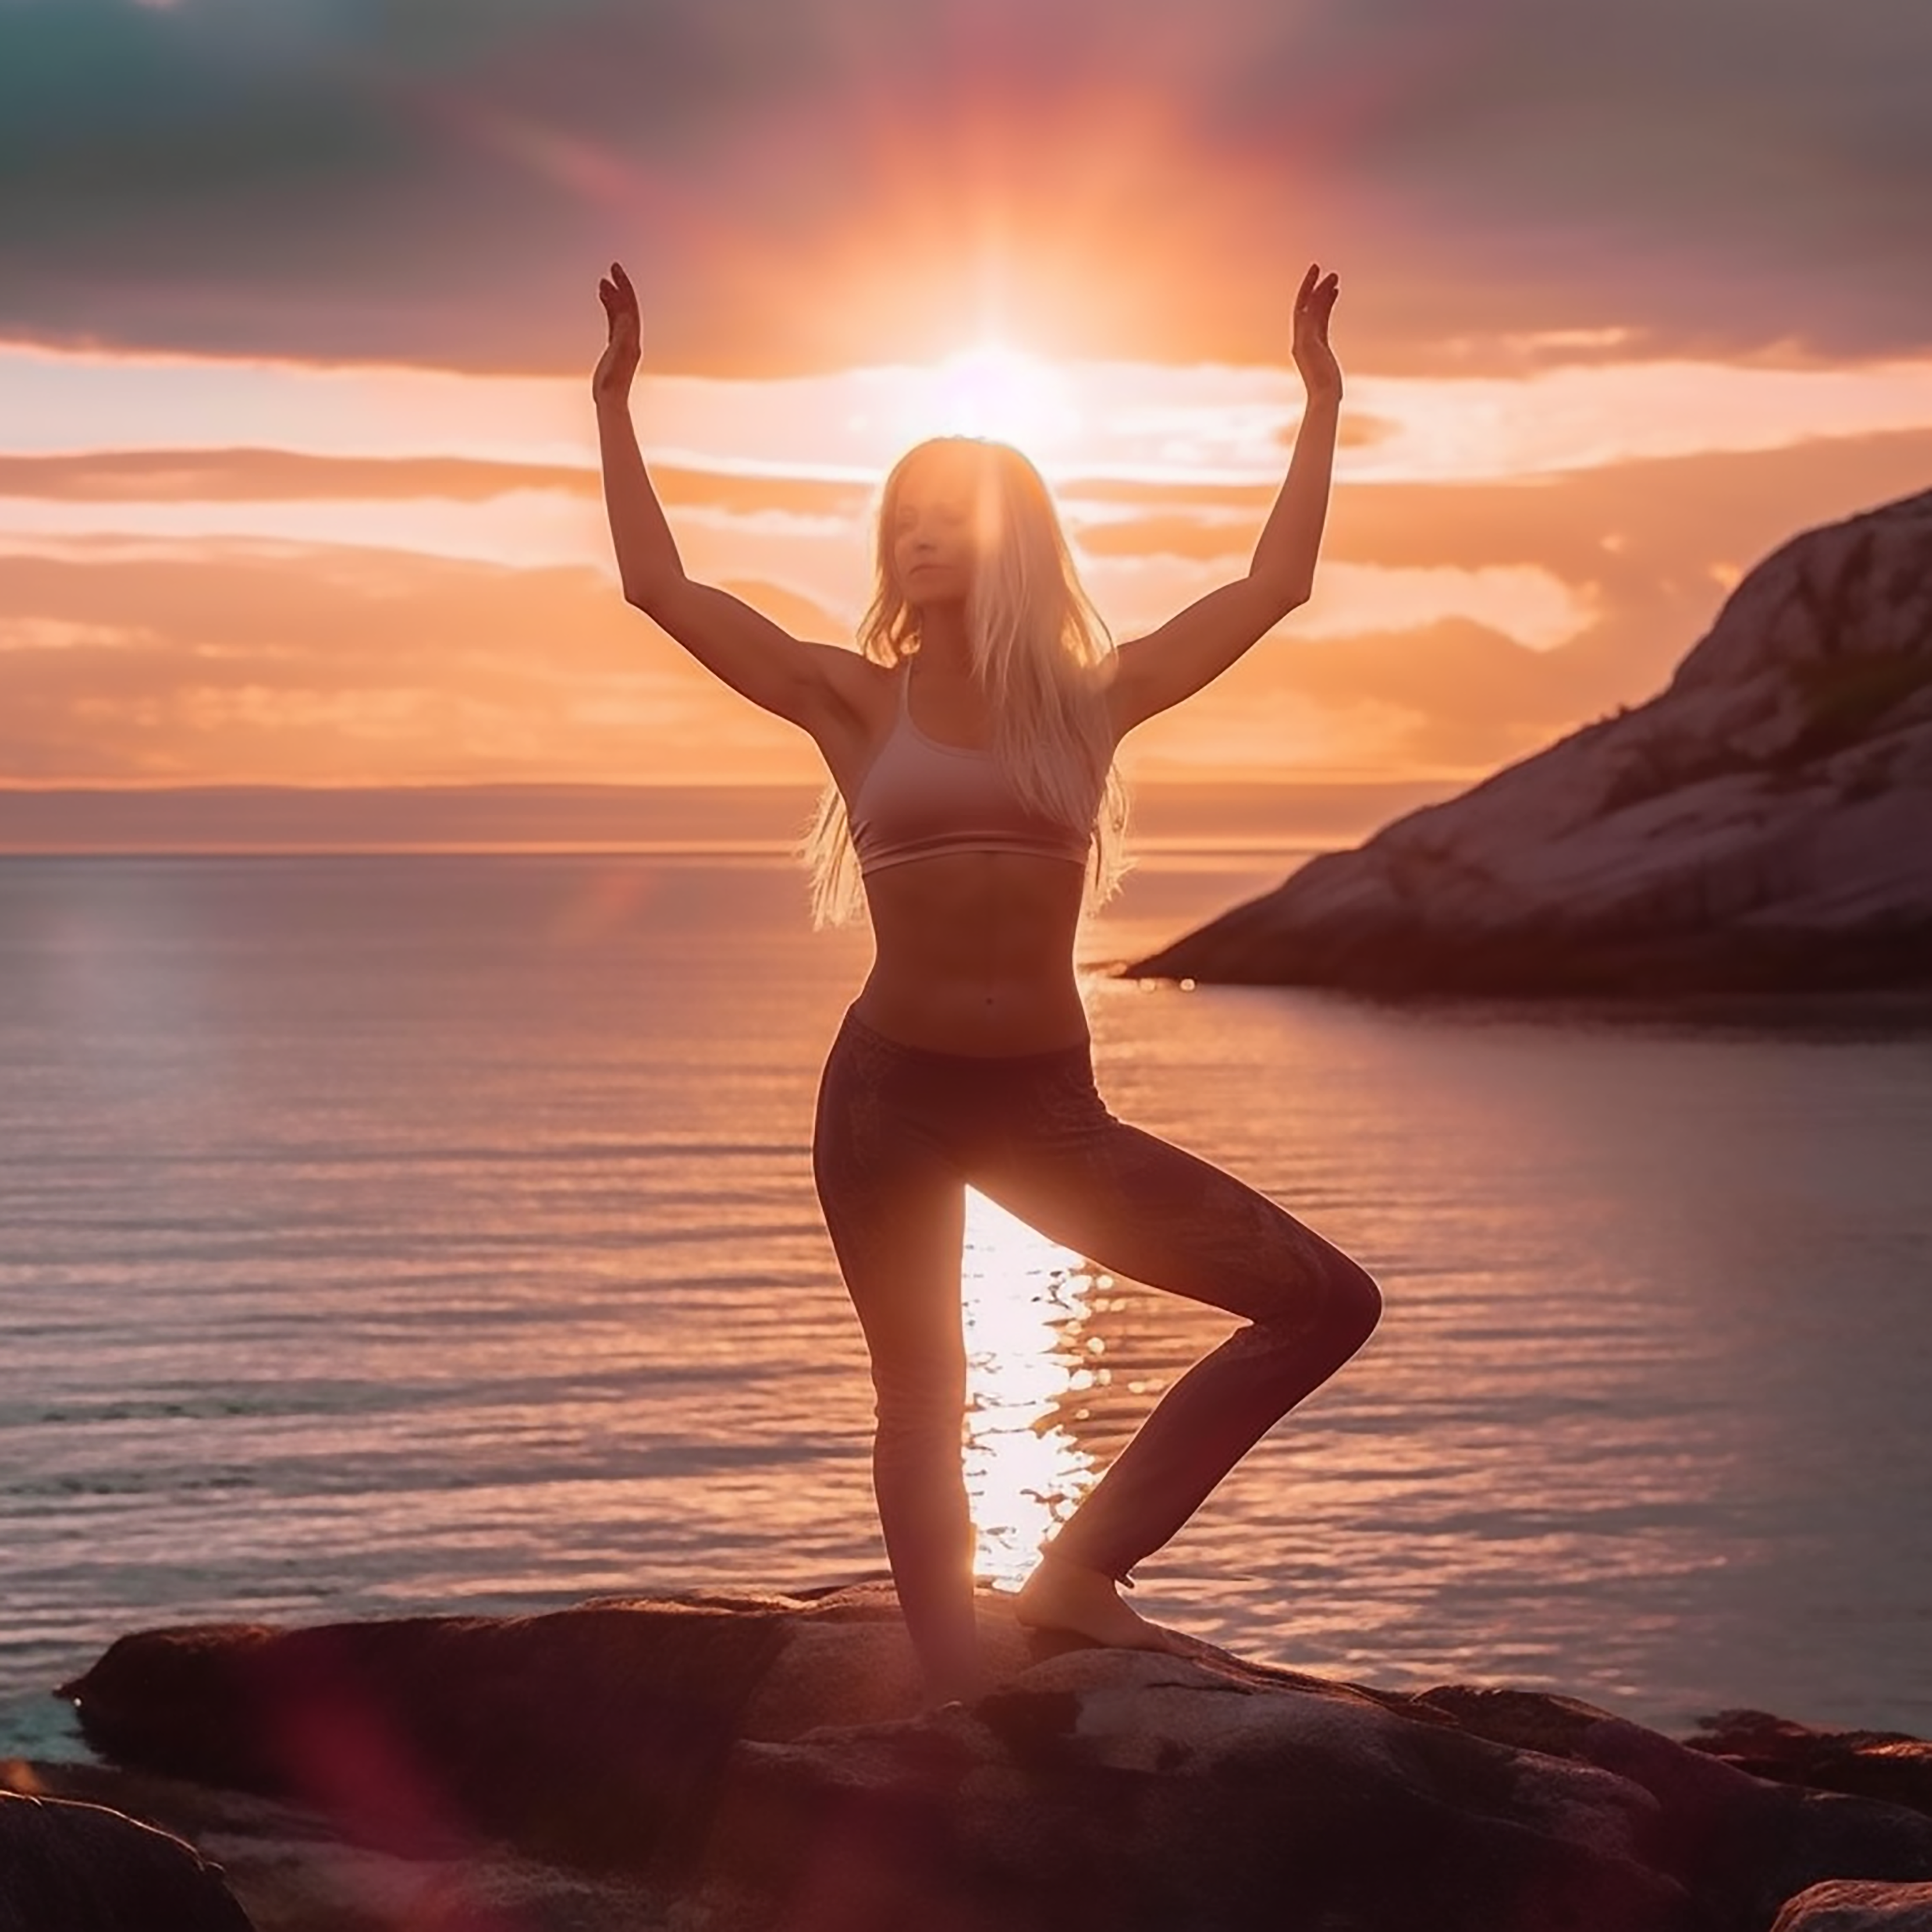 Žena cvičí jógu za klidného rána, když ji vycházející slunce zahaluje do teplých paprsků